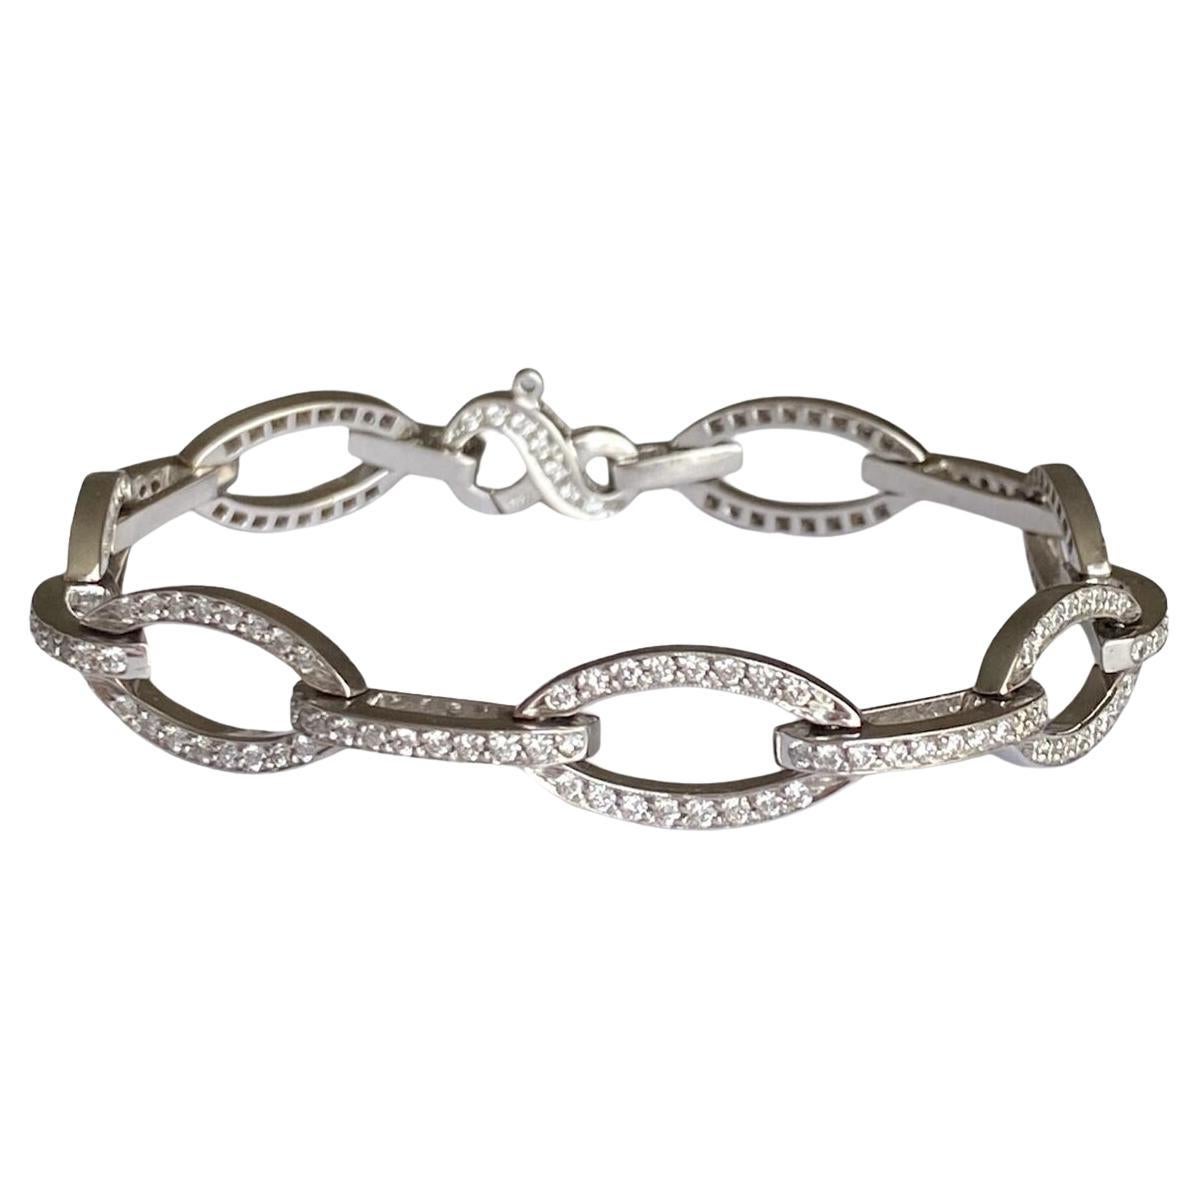 3 Carat Diamond Bracelet Link Style 18K White Gold 